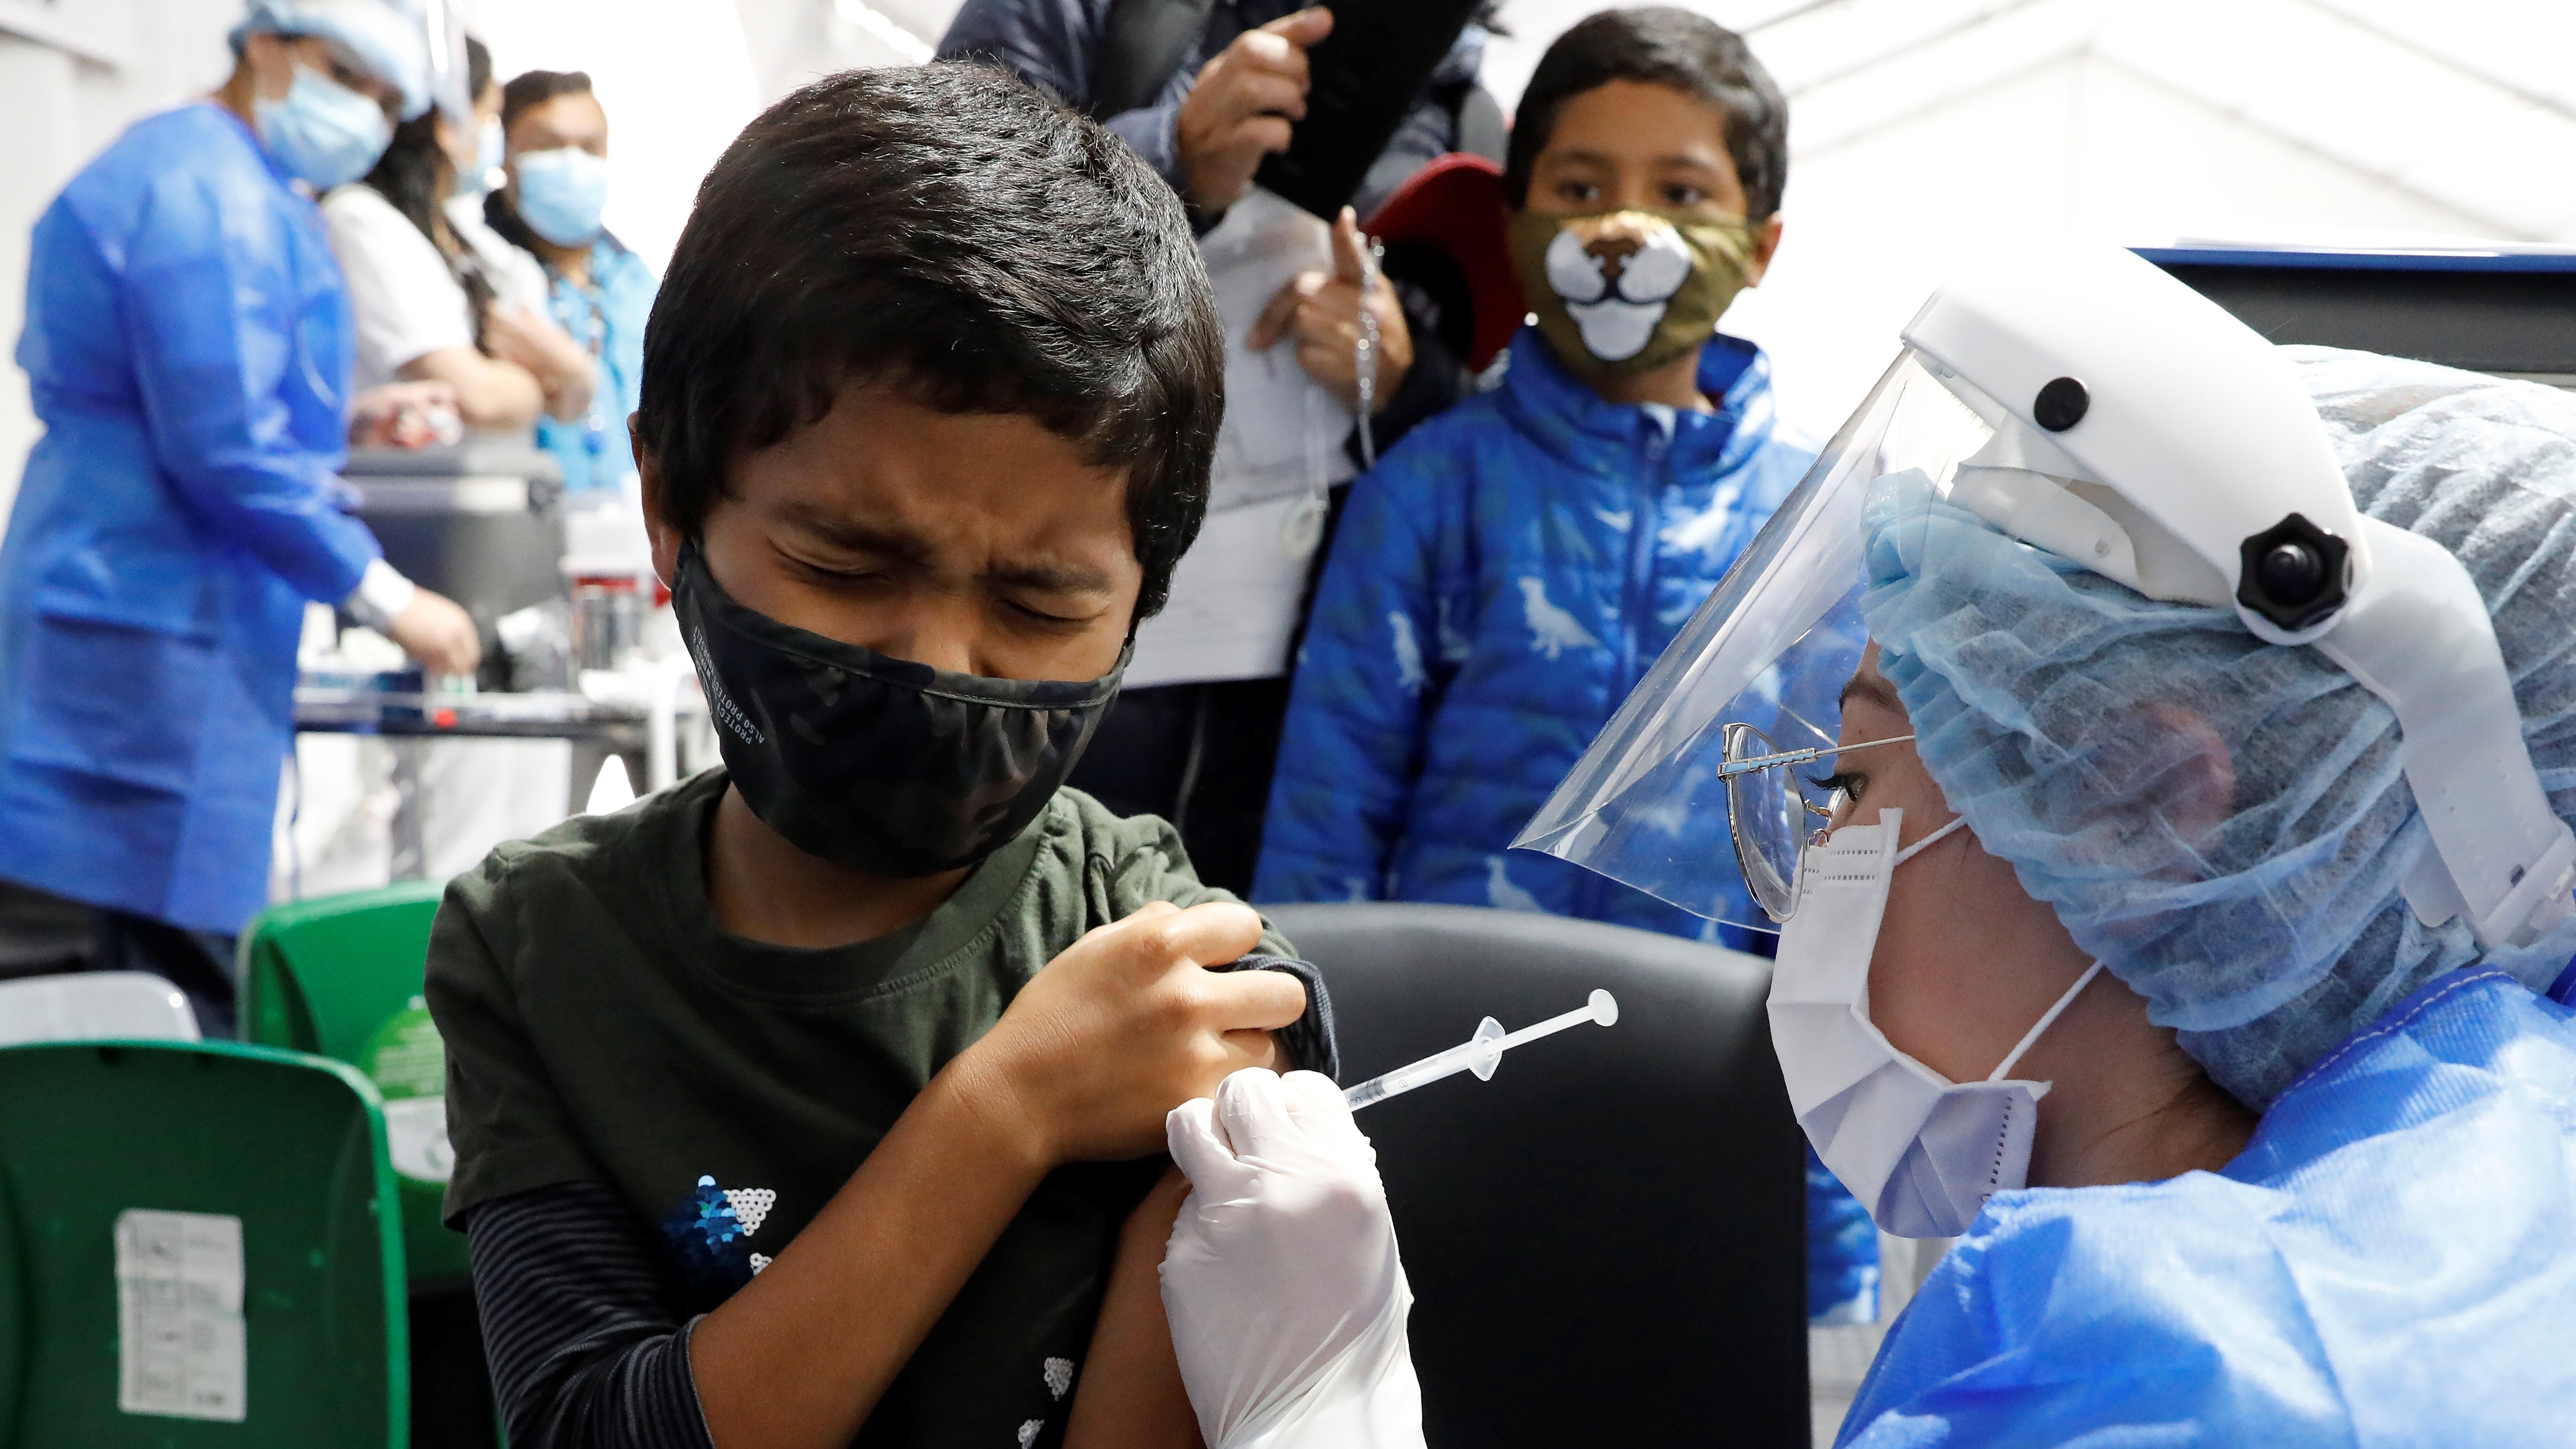 El país está pasando por su cuarta ola de contagios y los niños regresarán a clase 100% presencial, por lo que la vacunación es de gran importancia, asegura el Ministerio de Salud. EFE/Carlos Ortega.